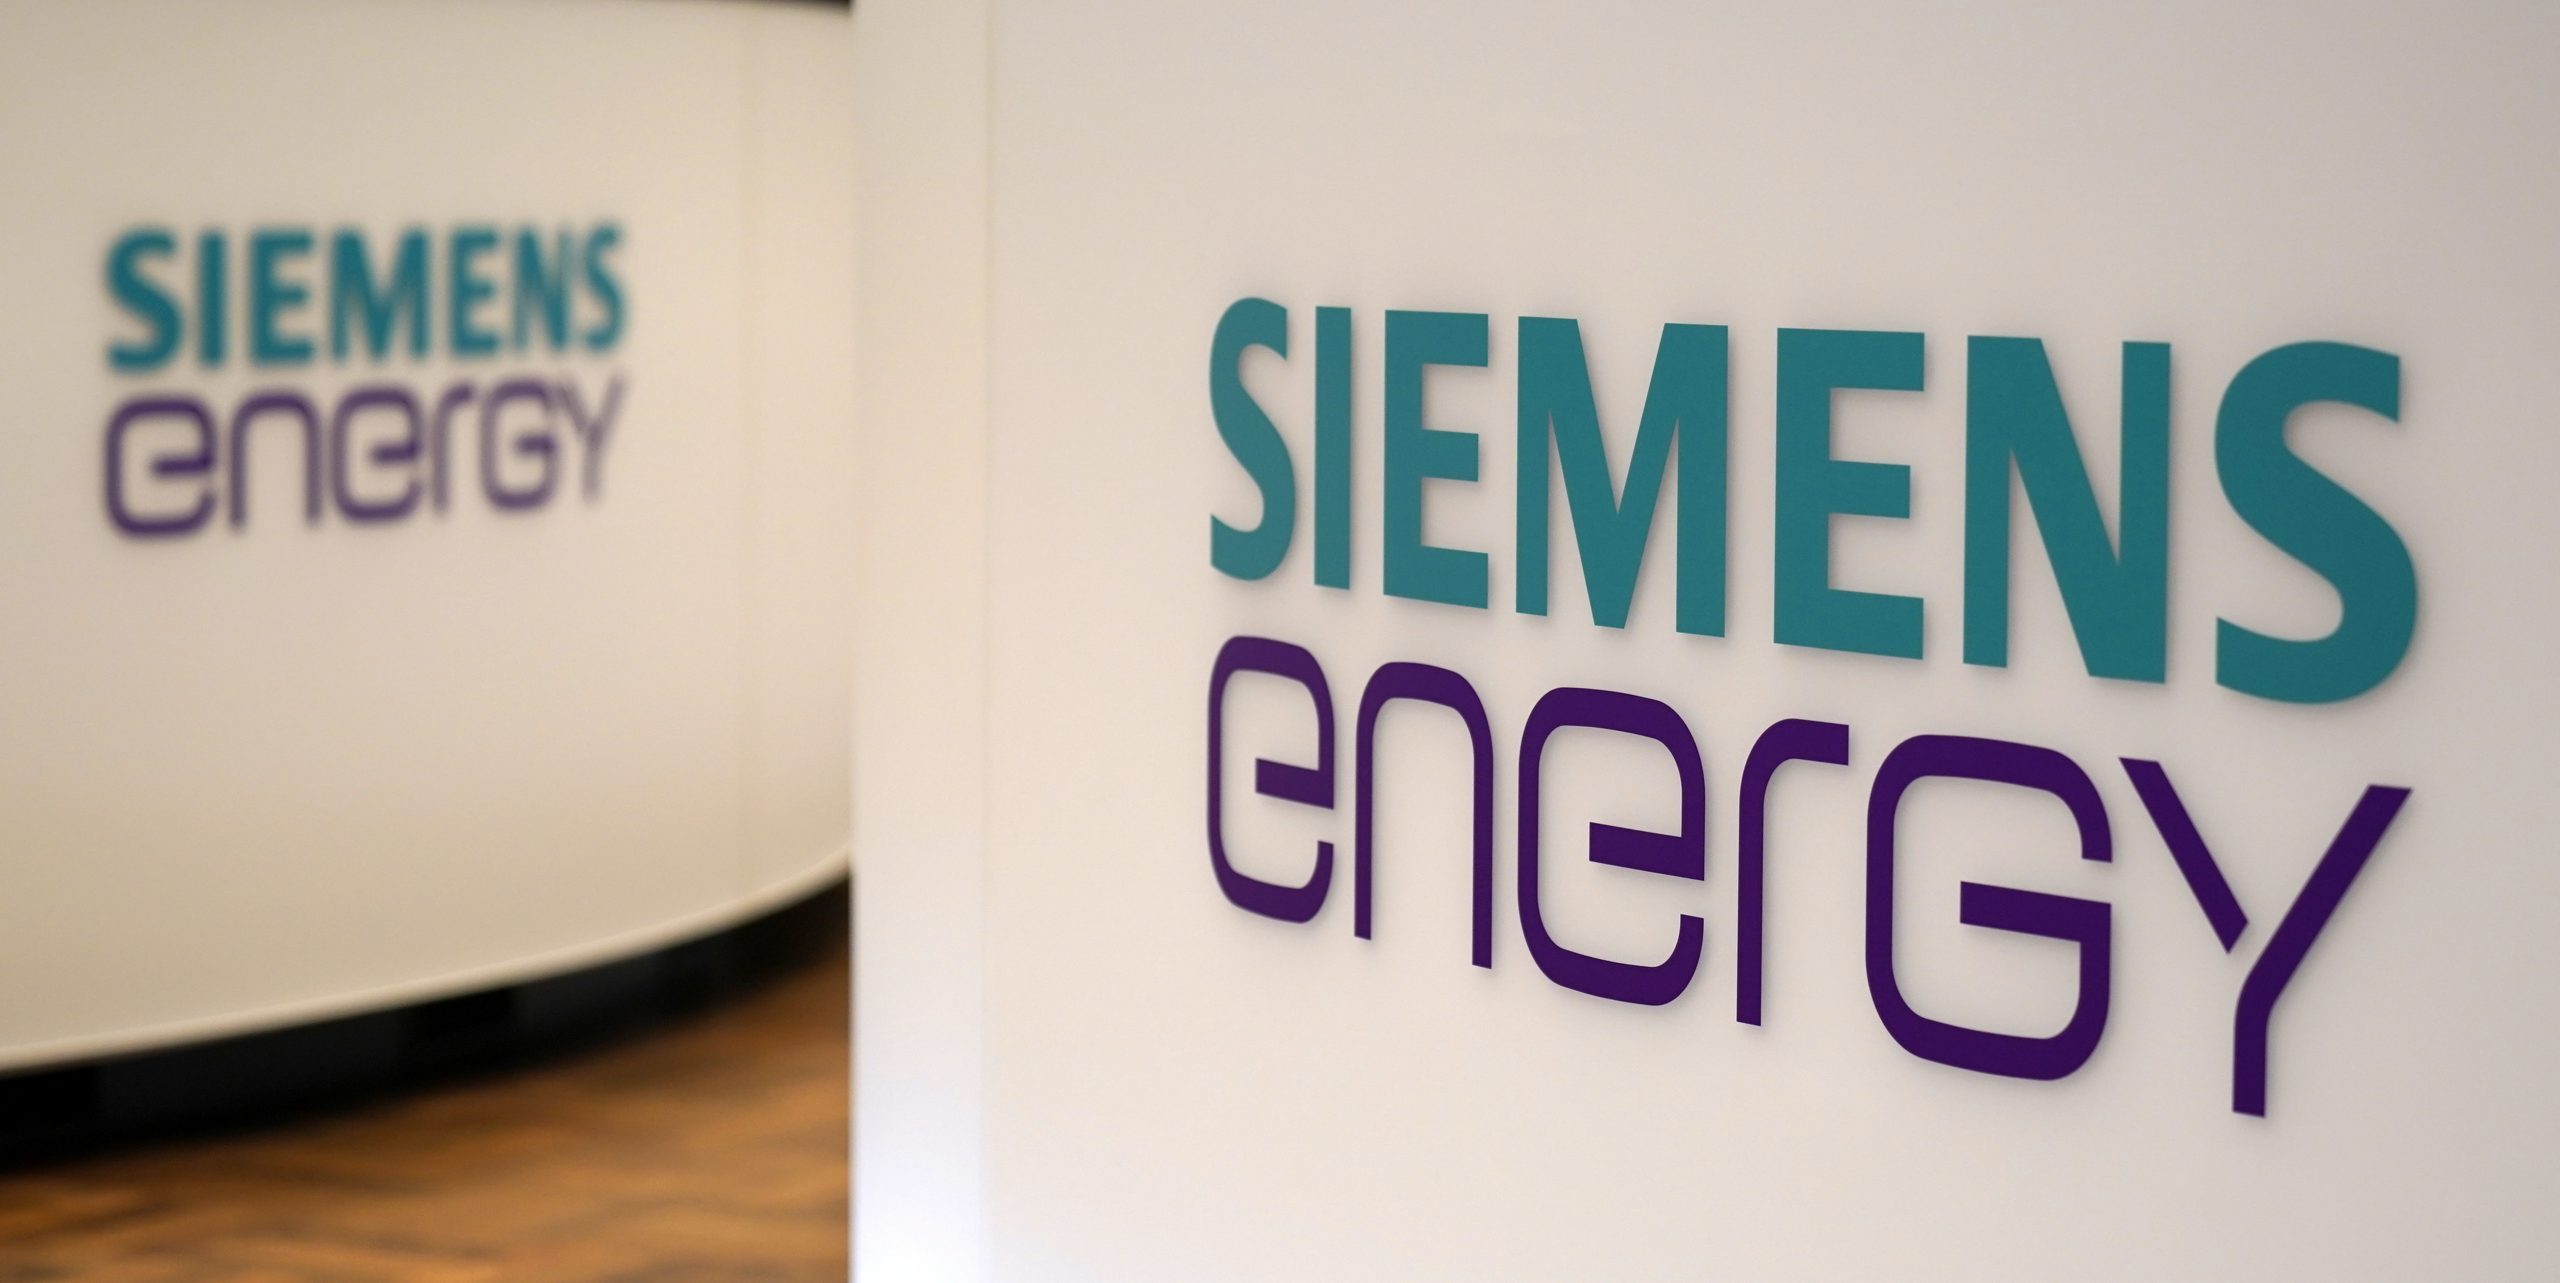 Siemens esperará el momento óptimo en el mercado para la venta de acciones de Siemens Energy